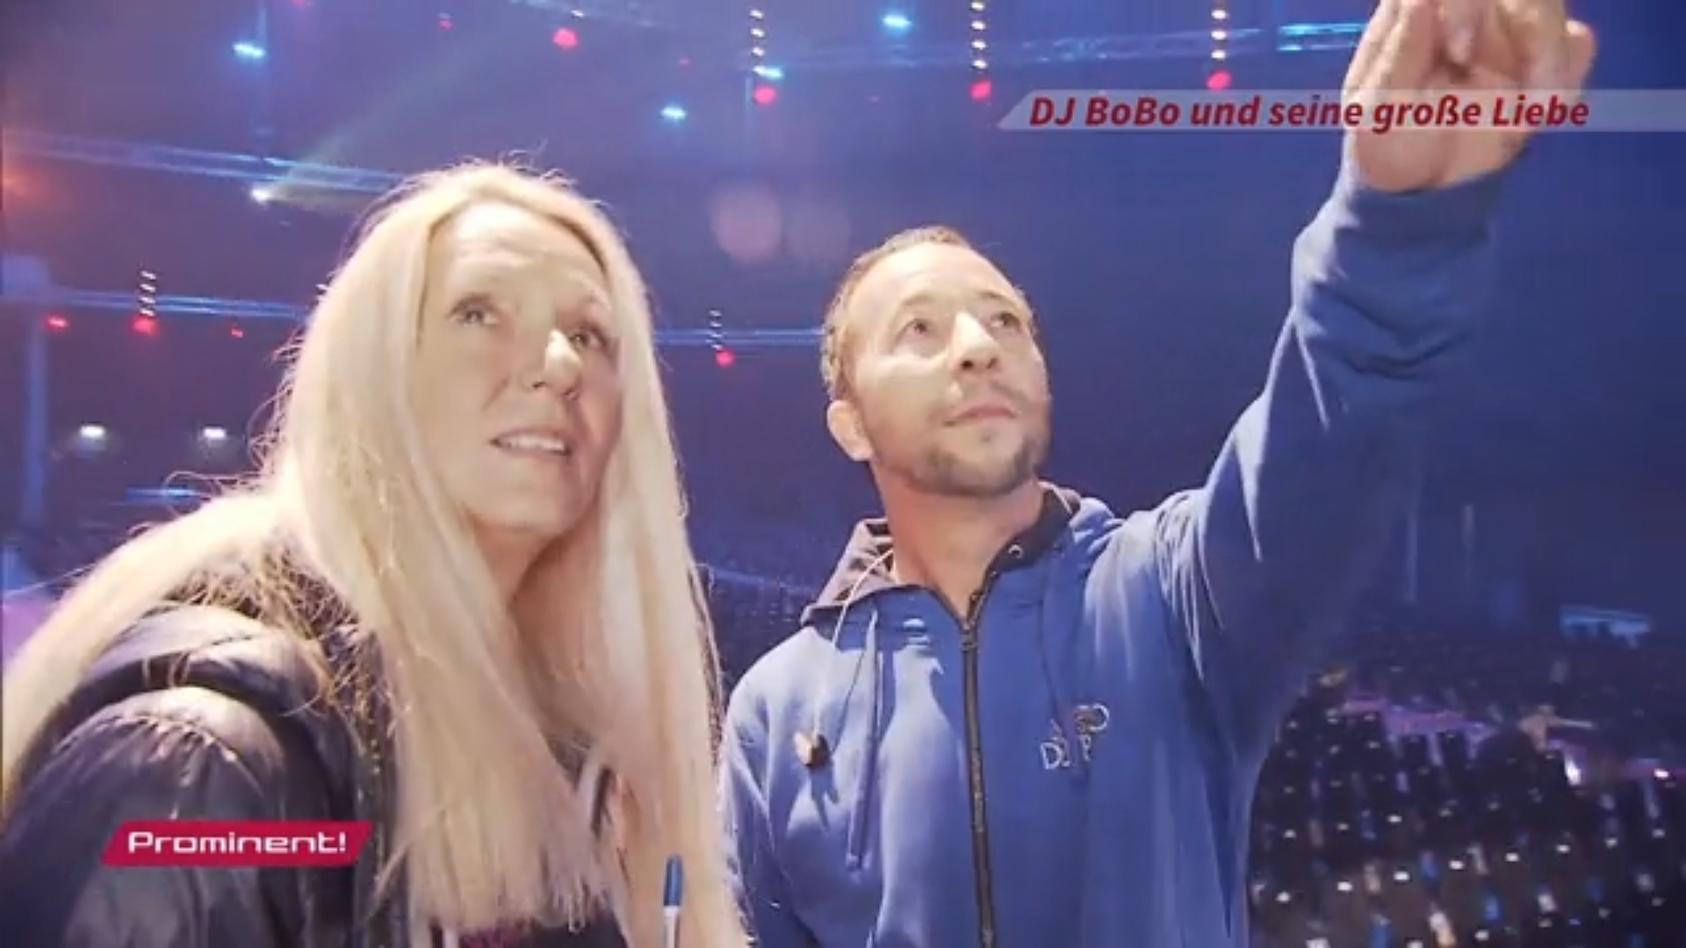 DJ Bobo war schon vor seiner Frau ständig verliebt Große Liebe Eurodance